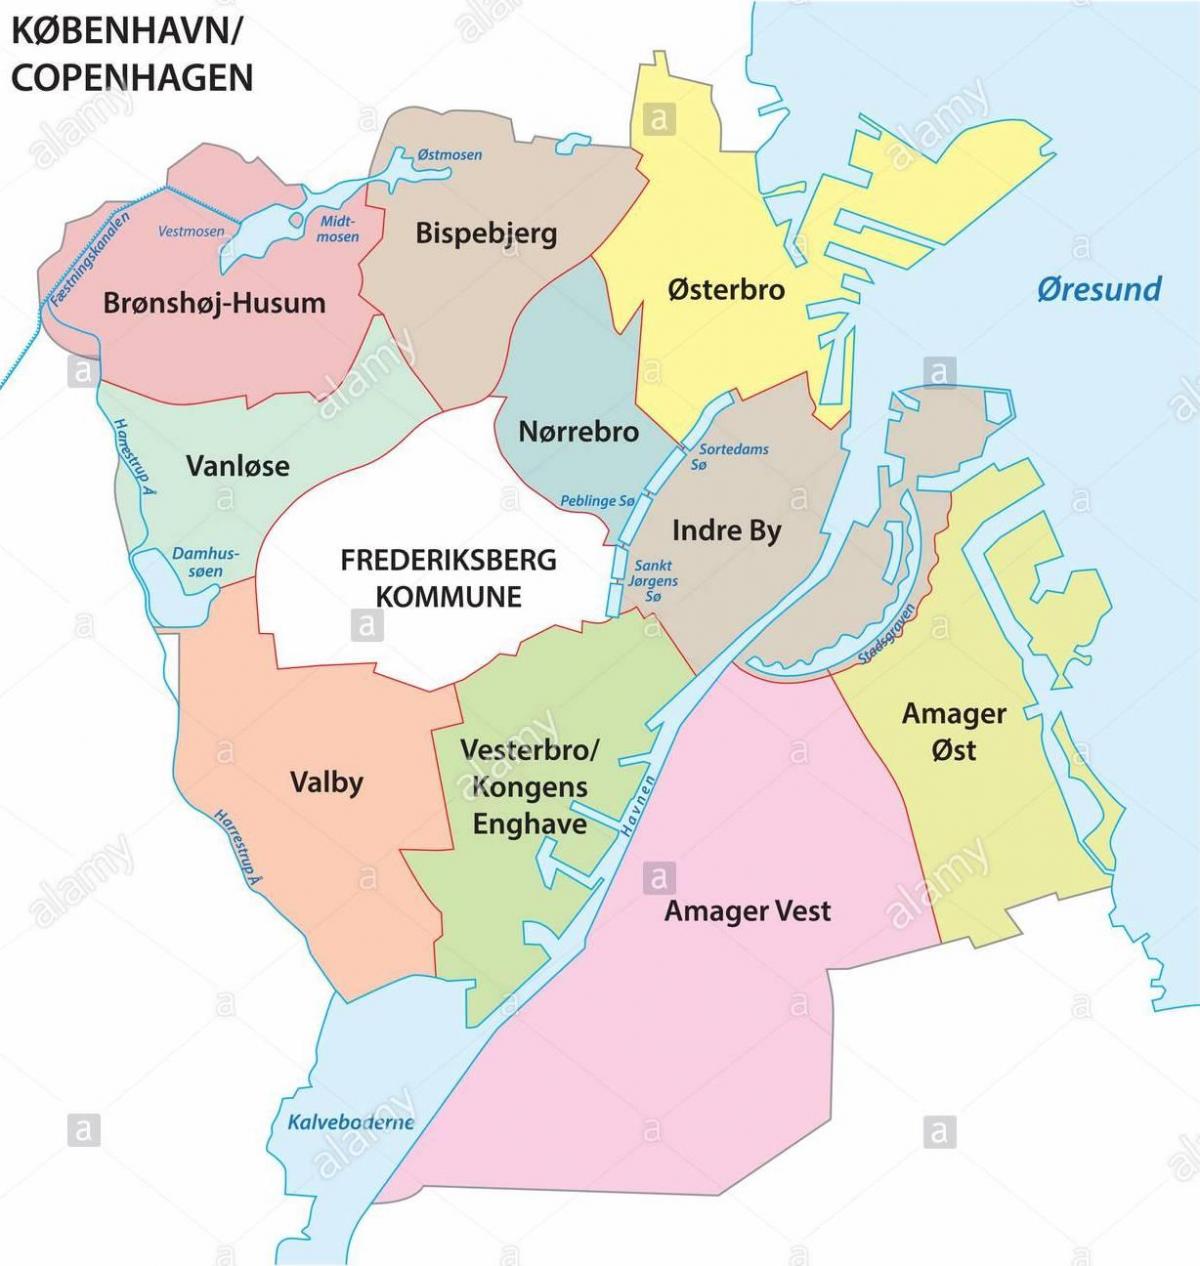 コペンハーゲン地区マップ